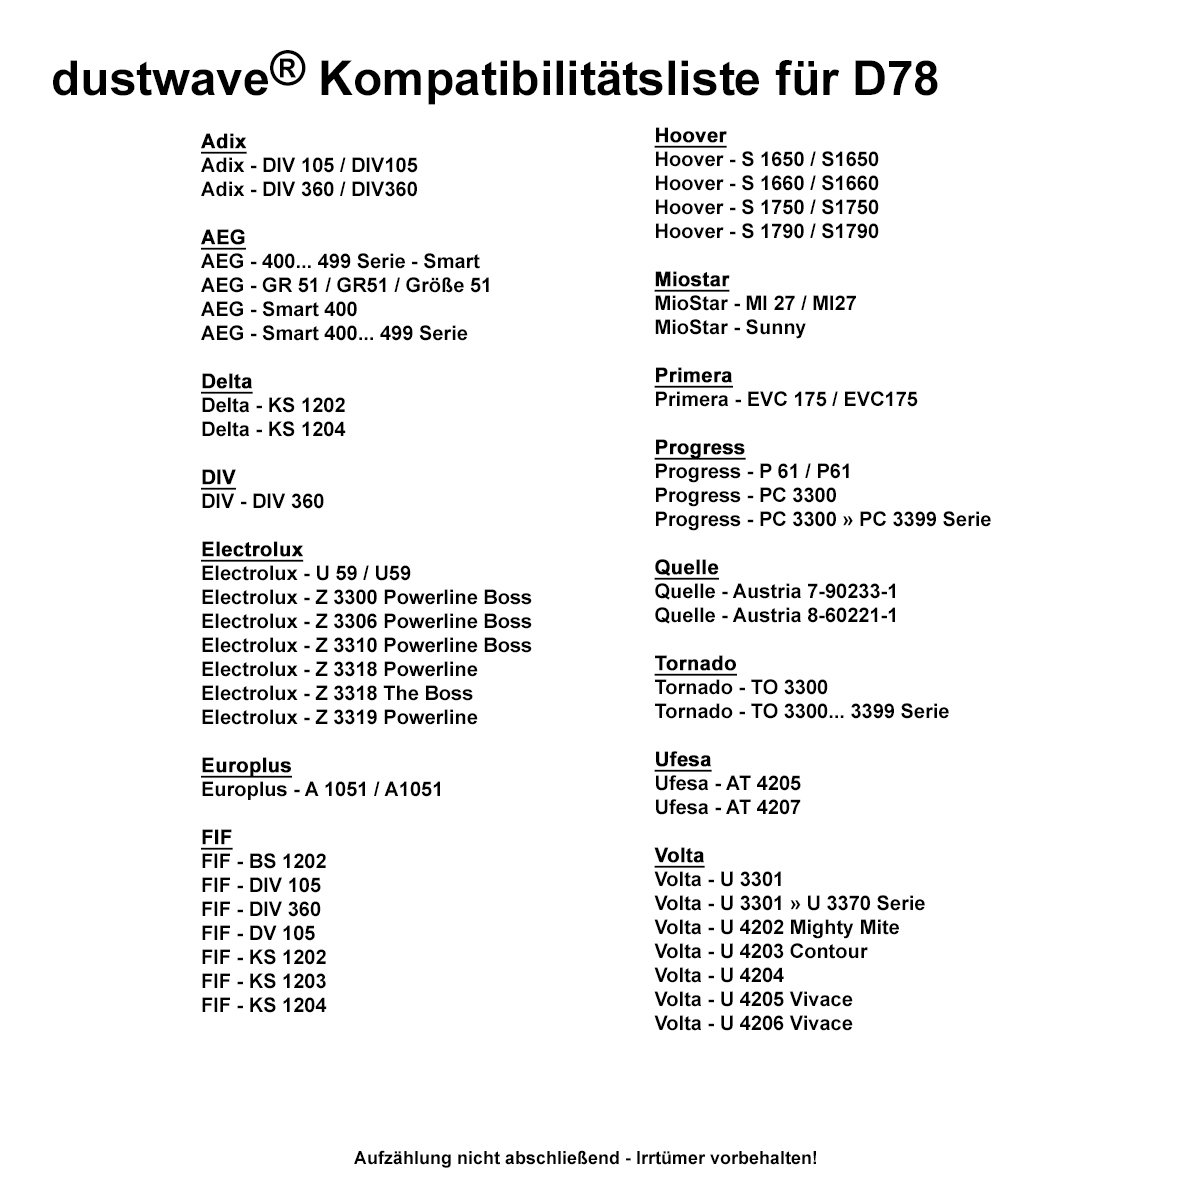 Dustwave® 40 Staubsaugerbeutel für AEG Smart 487 - hocheffizient mit Hygieneverschluss - Made in Germany